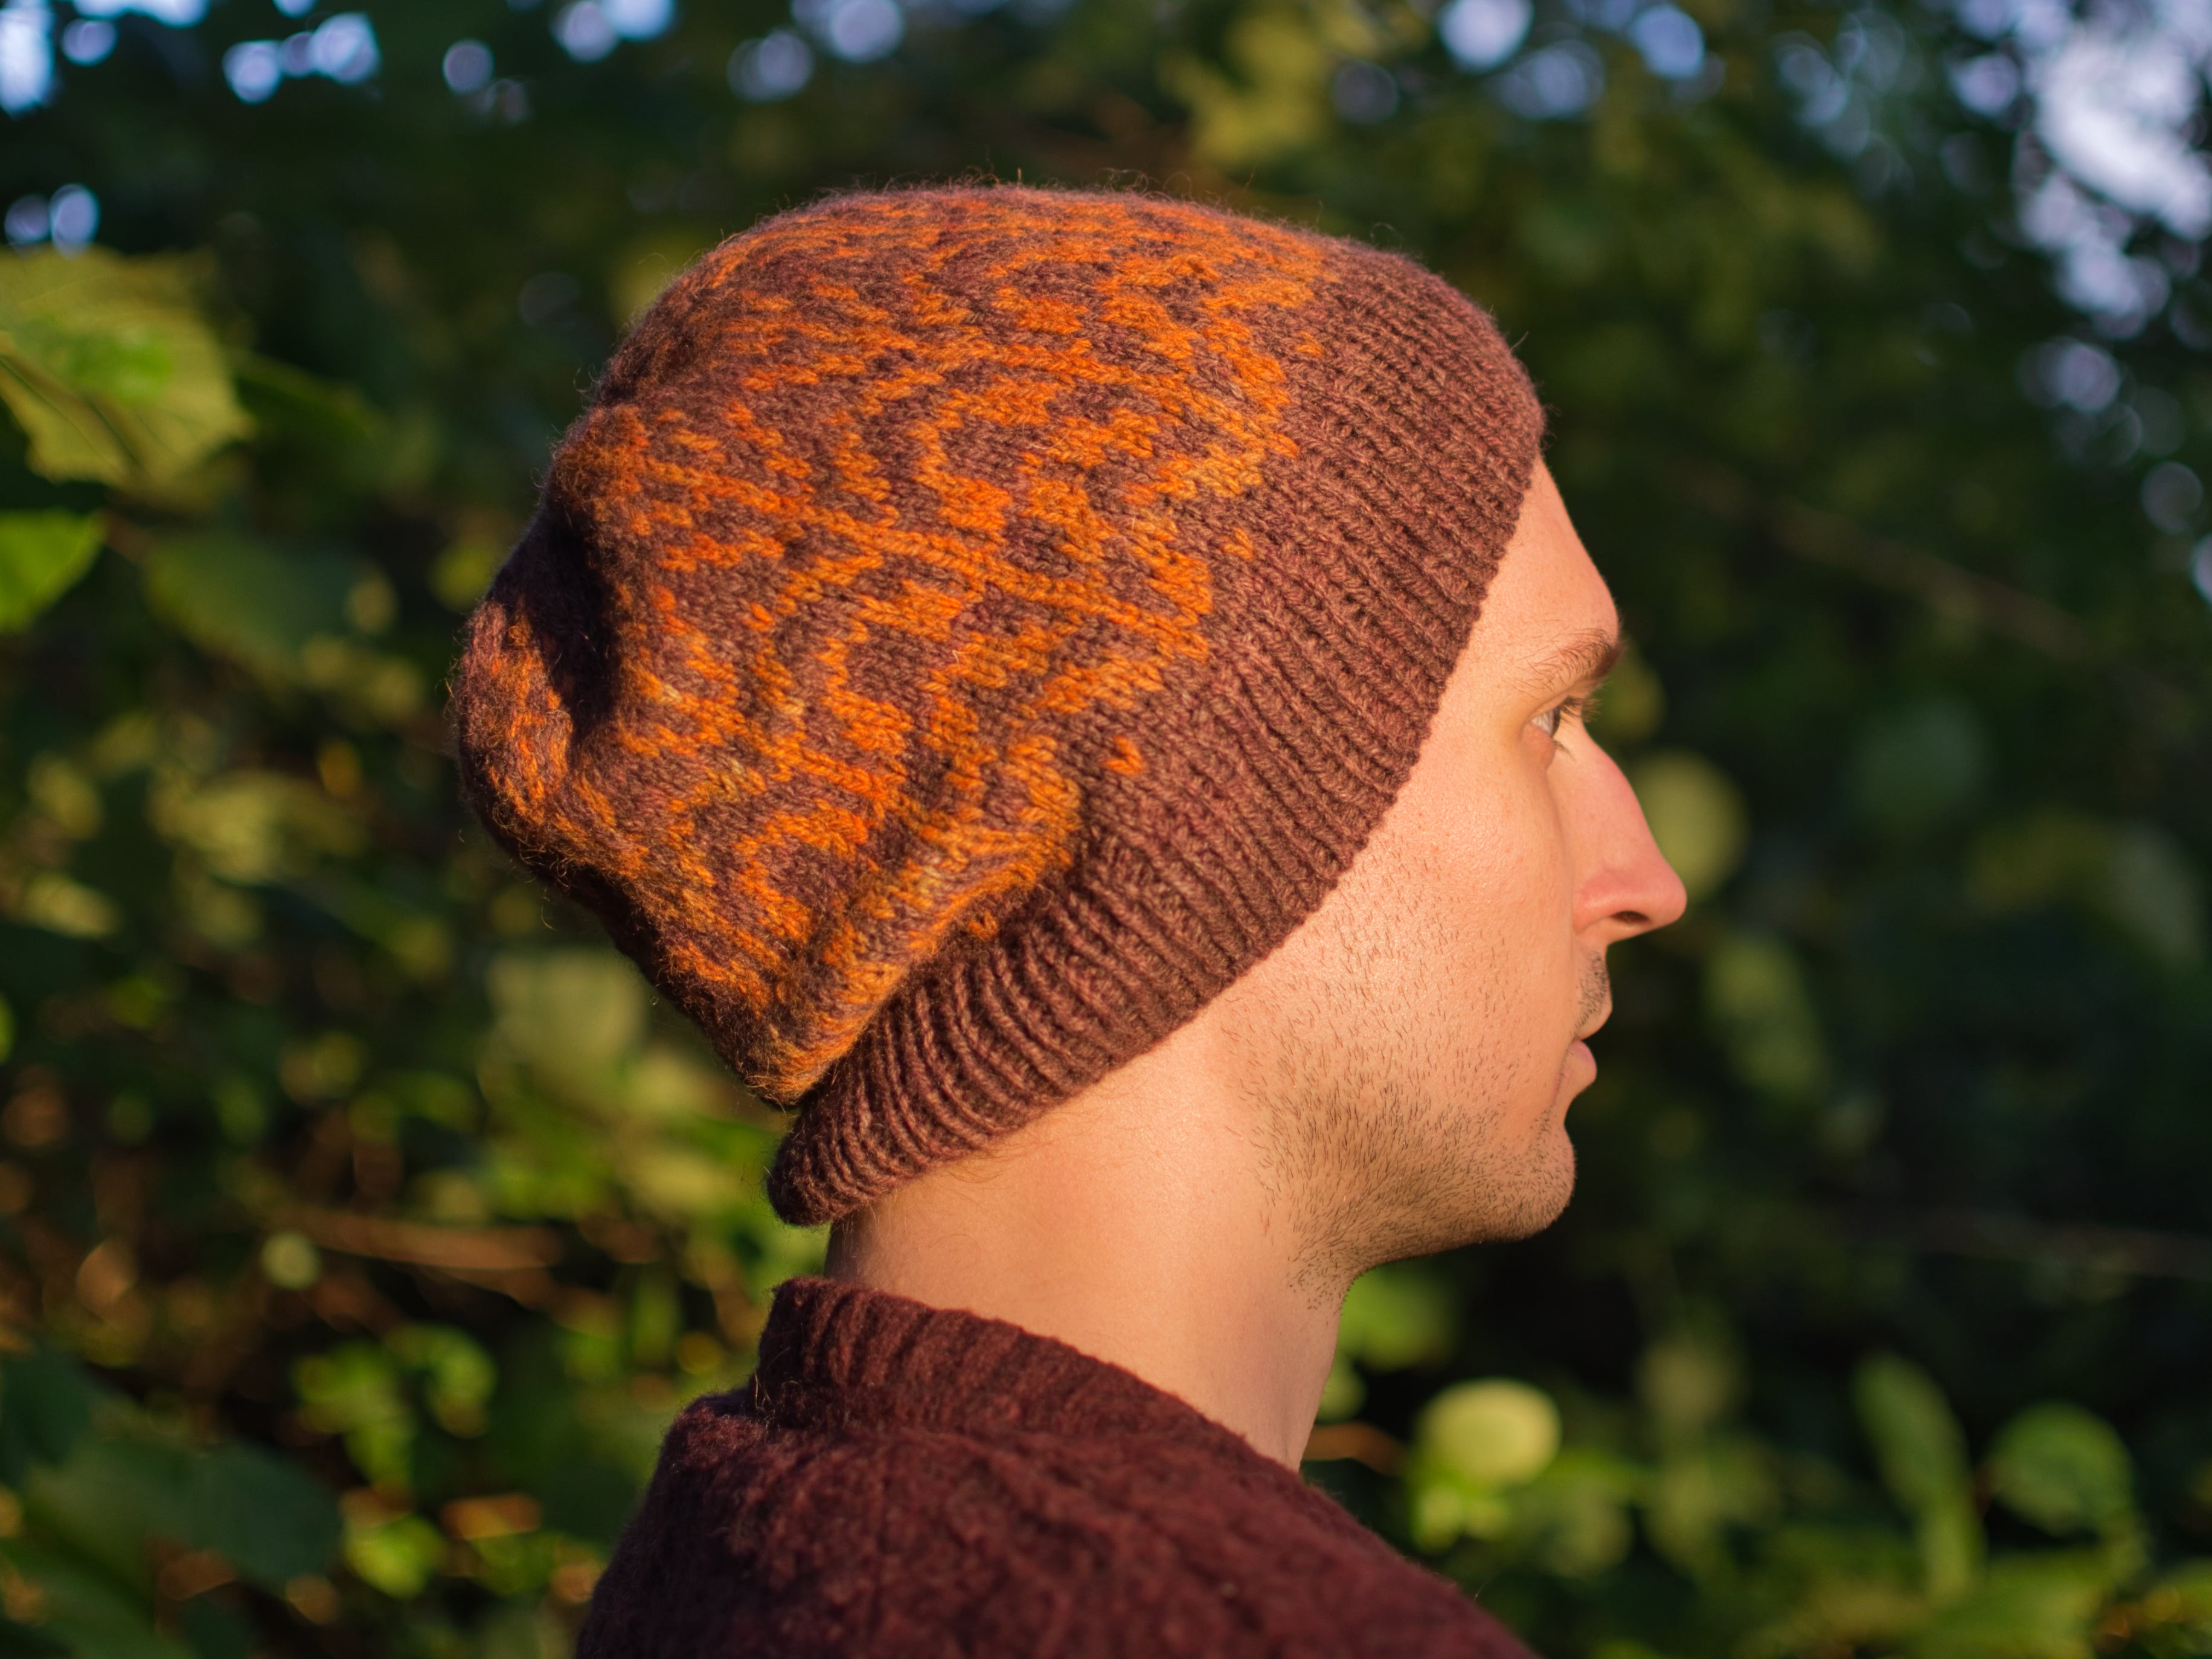 Weod hat knitting pattern